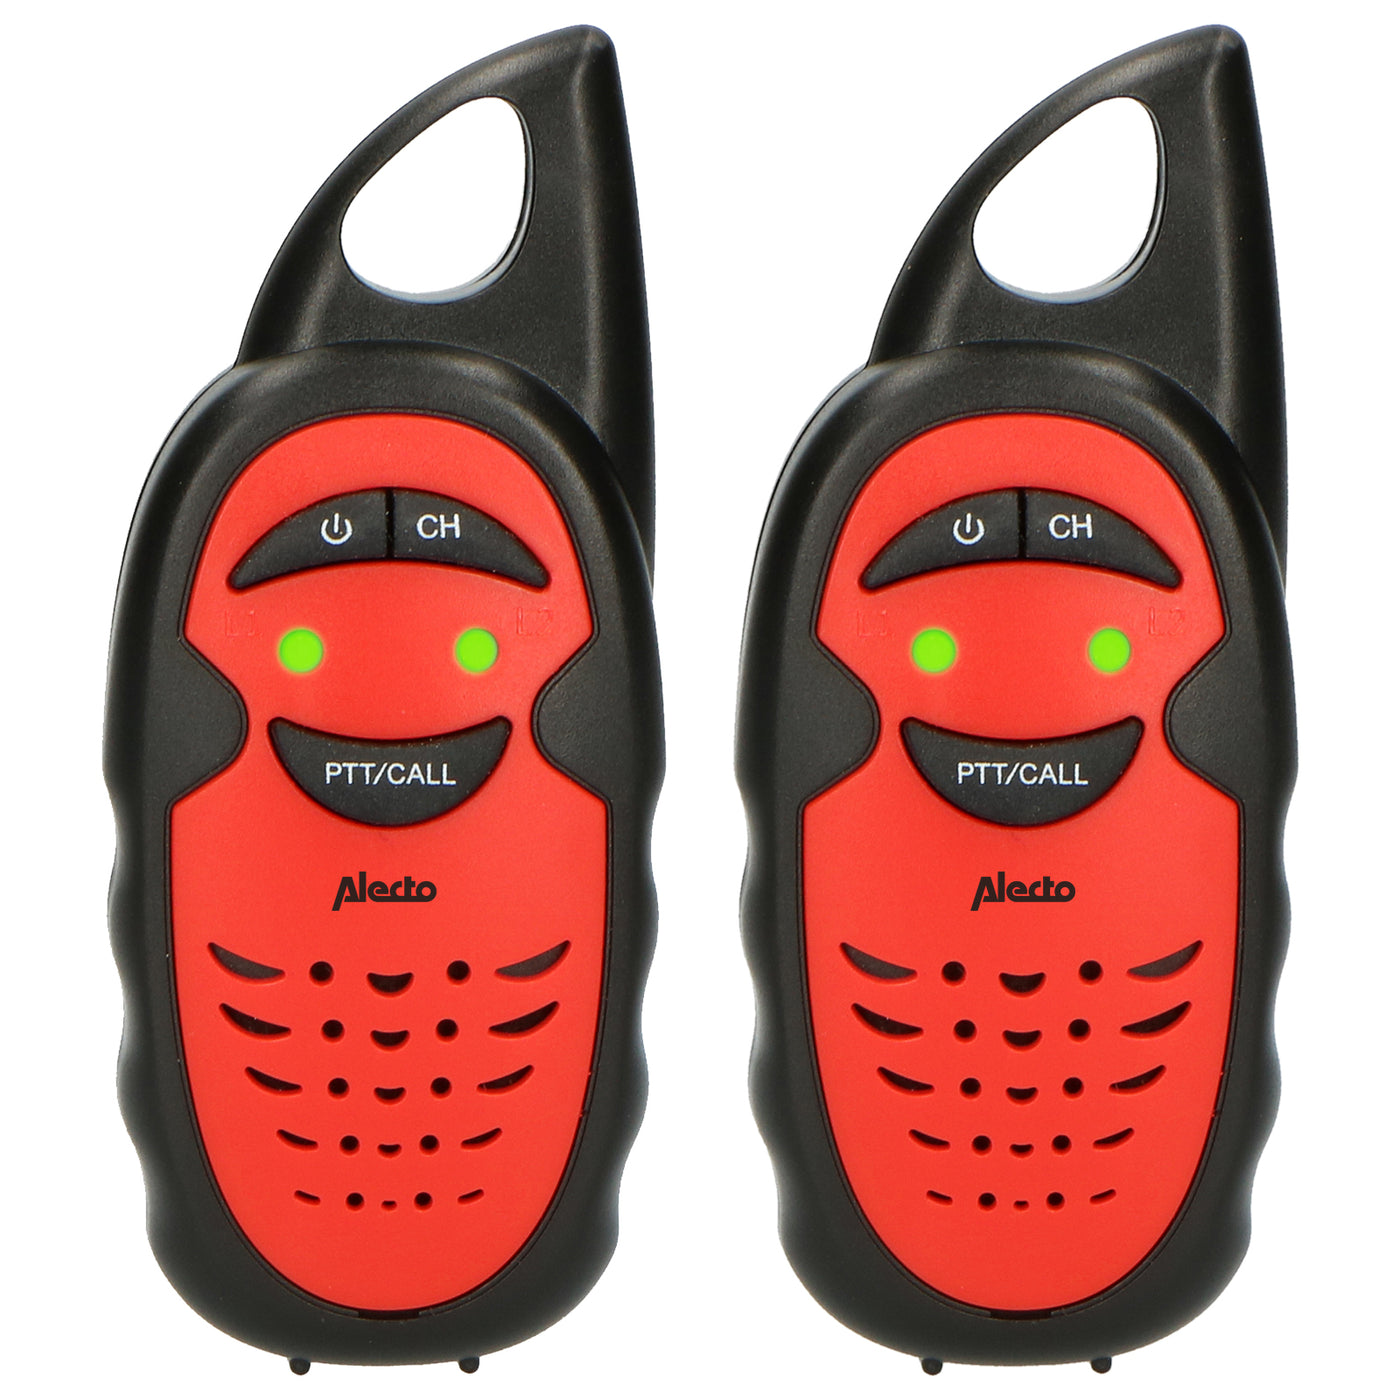 Alecto FR-05RD - Set of 2 kids’ walkie talkies, range up to 3 kilometers, black/red